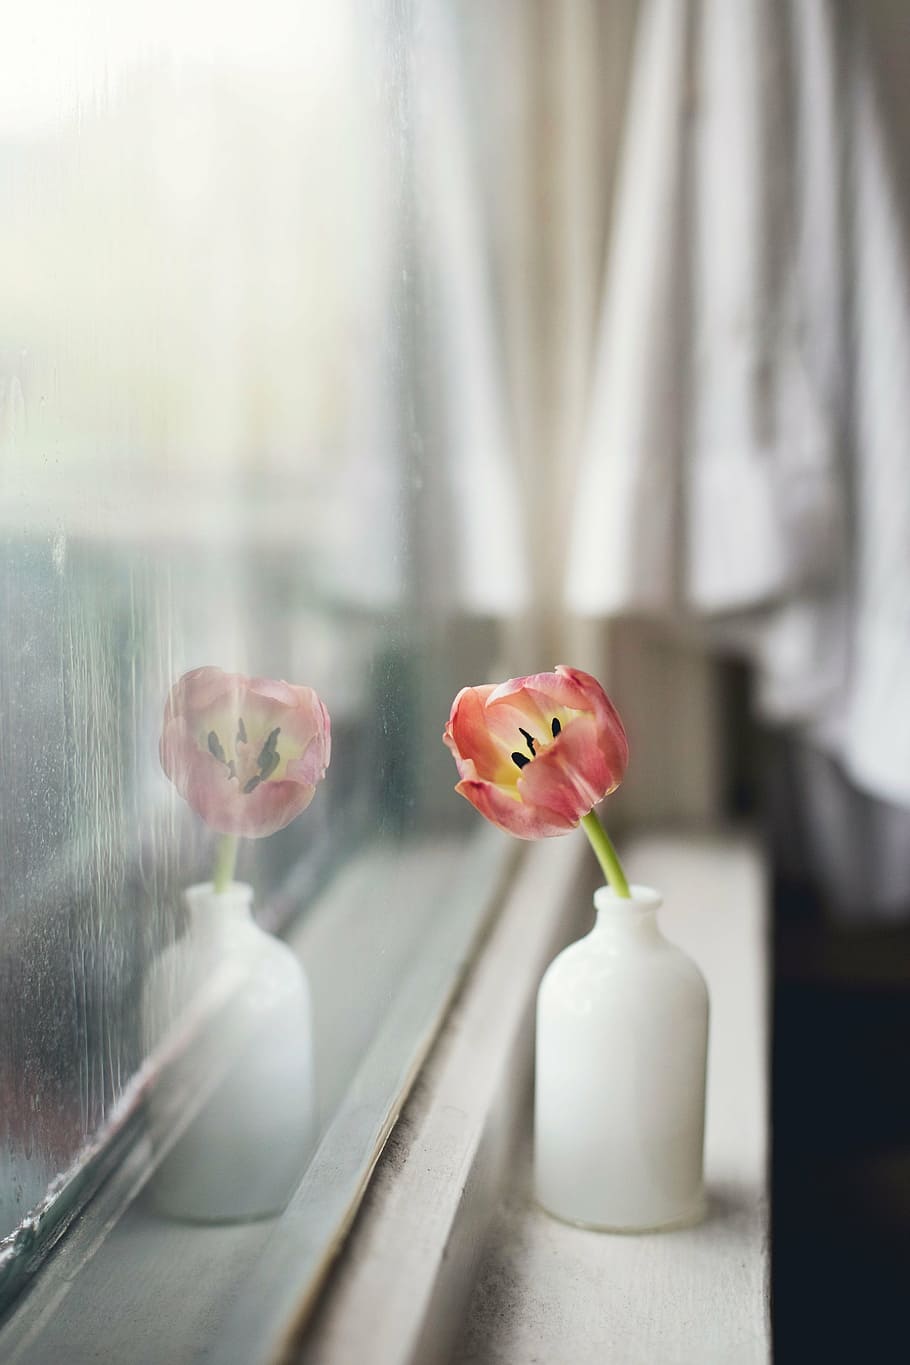 merah muda, bunga tulip, putih, vas, bunga, interior, tampilan, jendela, kaca, kamar tidur